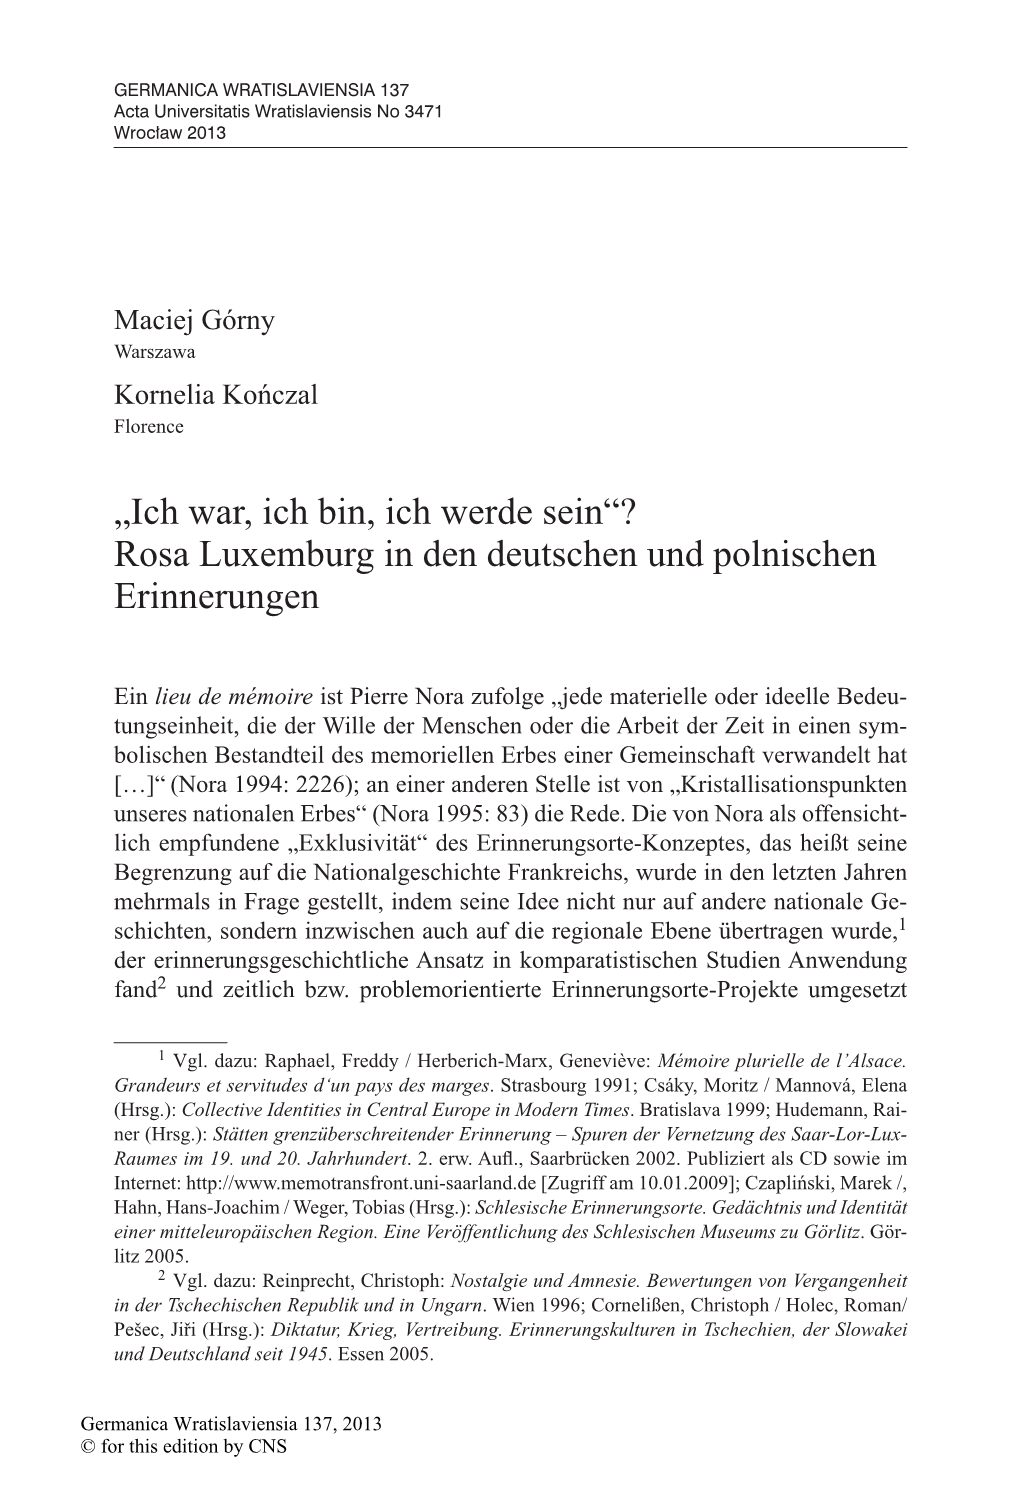 Rosa Luxemburg in Den Deutschen Und Polnischen Erinnerungen